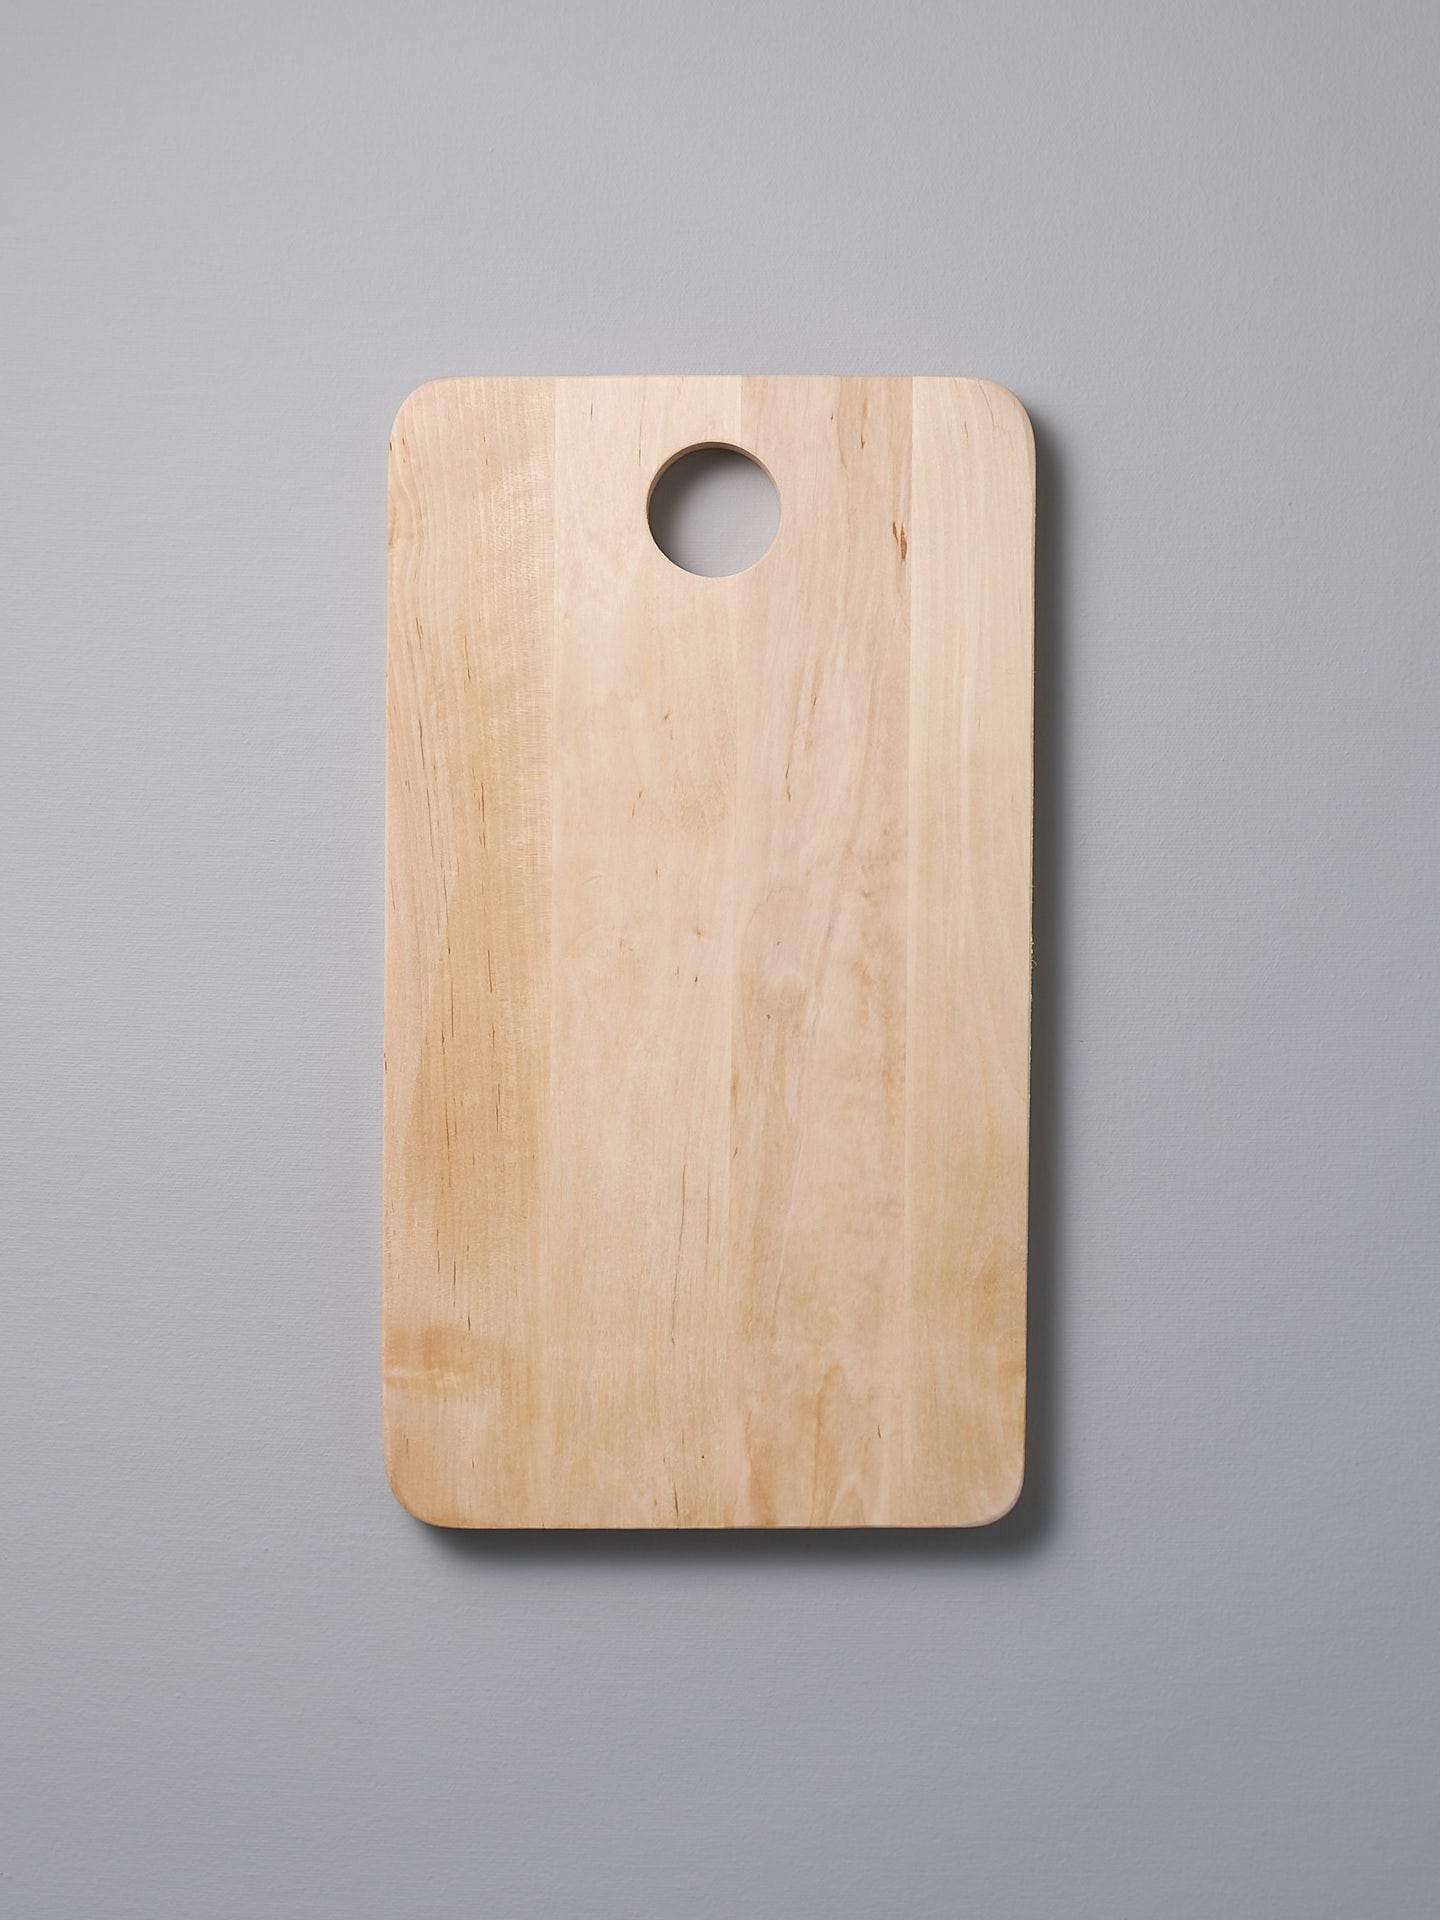 An Iris Hantverk Birch Chopping Board – Medium on a gray background.